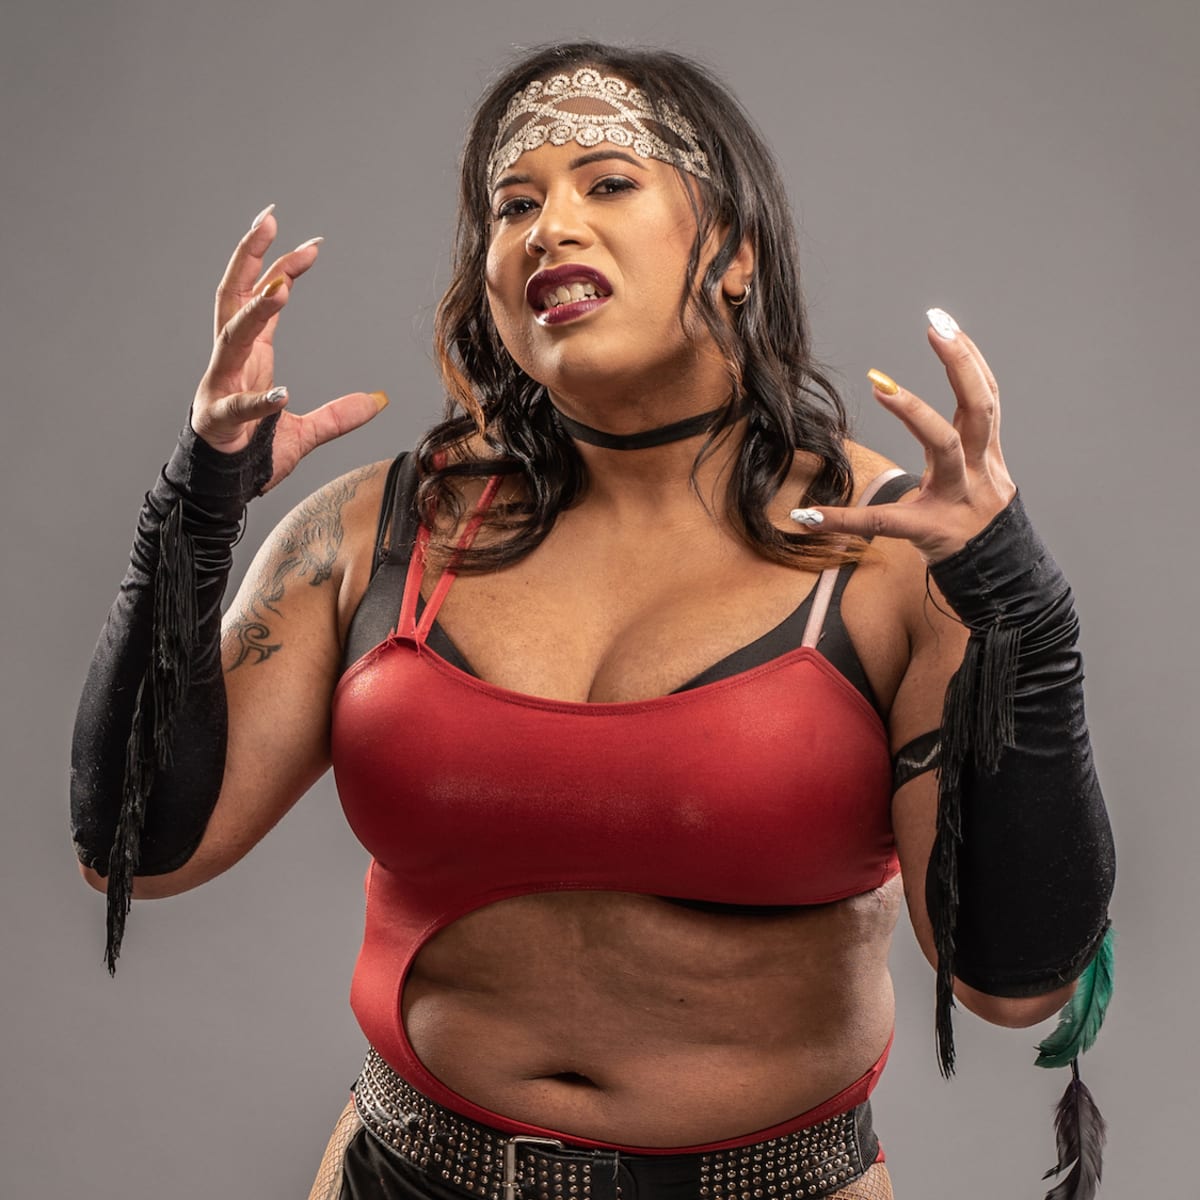 Nyla Rose AEW wrestler makes history as transgender performer